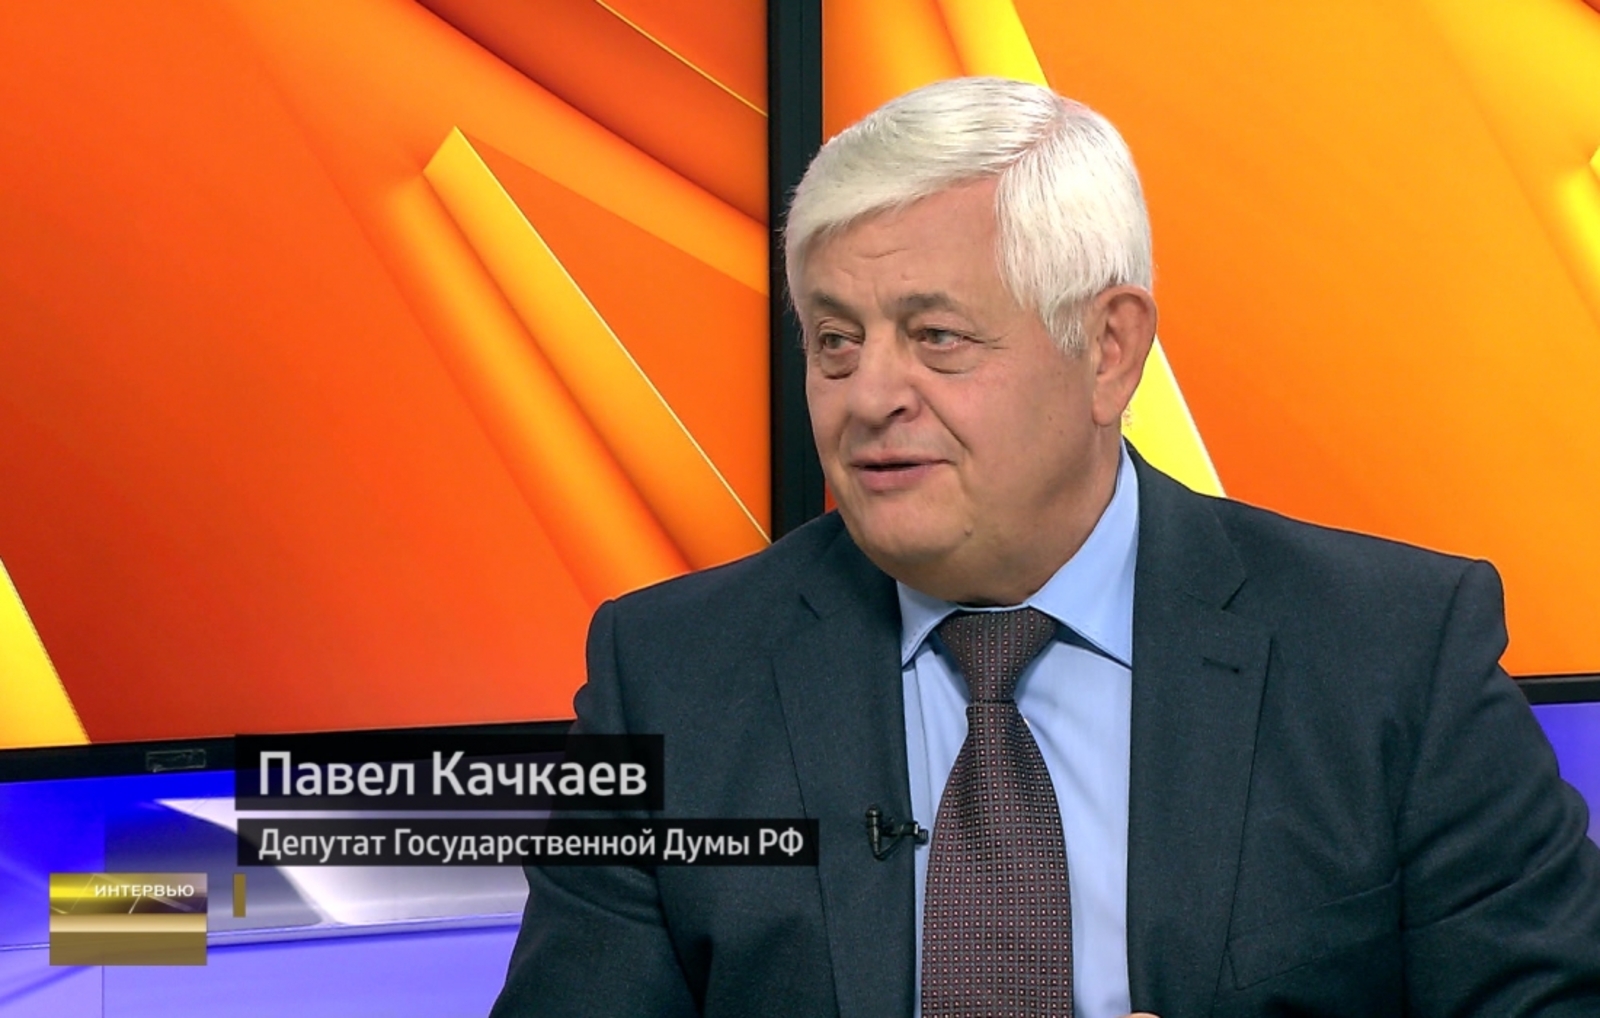 Павел Качкаев: «Внедрение энергоэффективных технологий – способ снижения платы за ЖКХ»